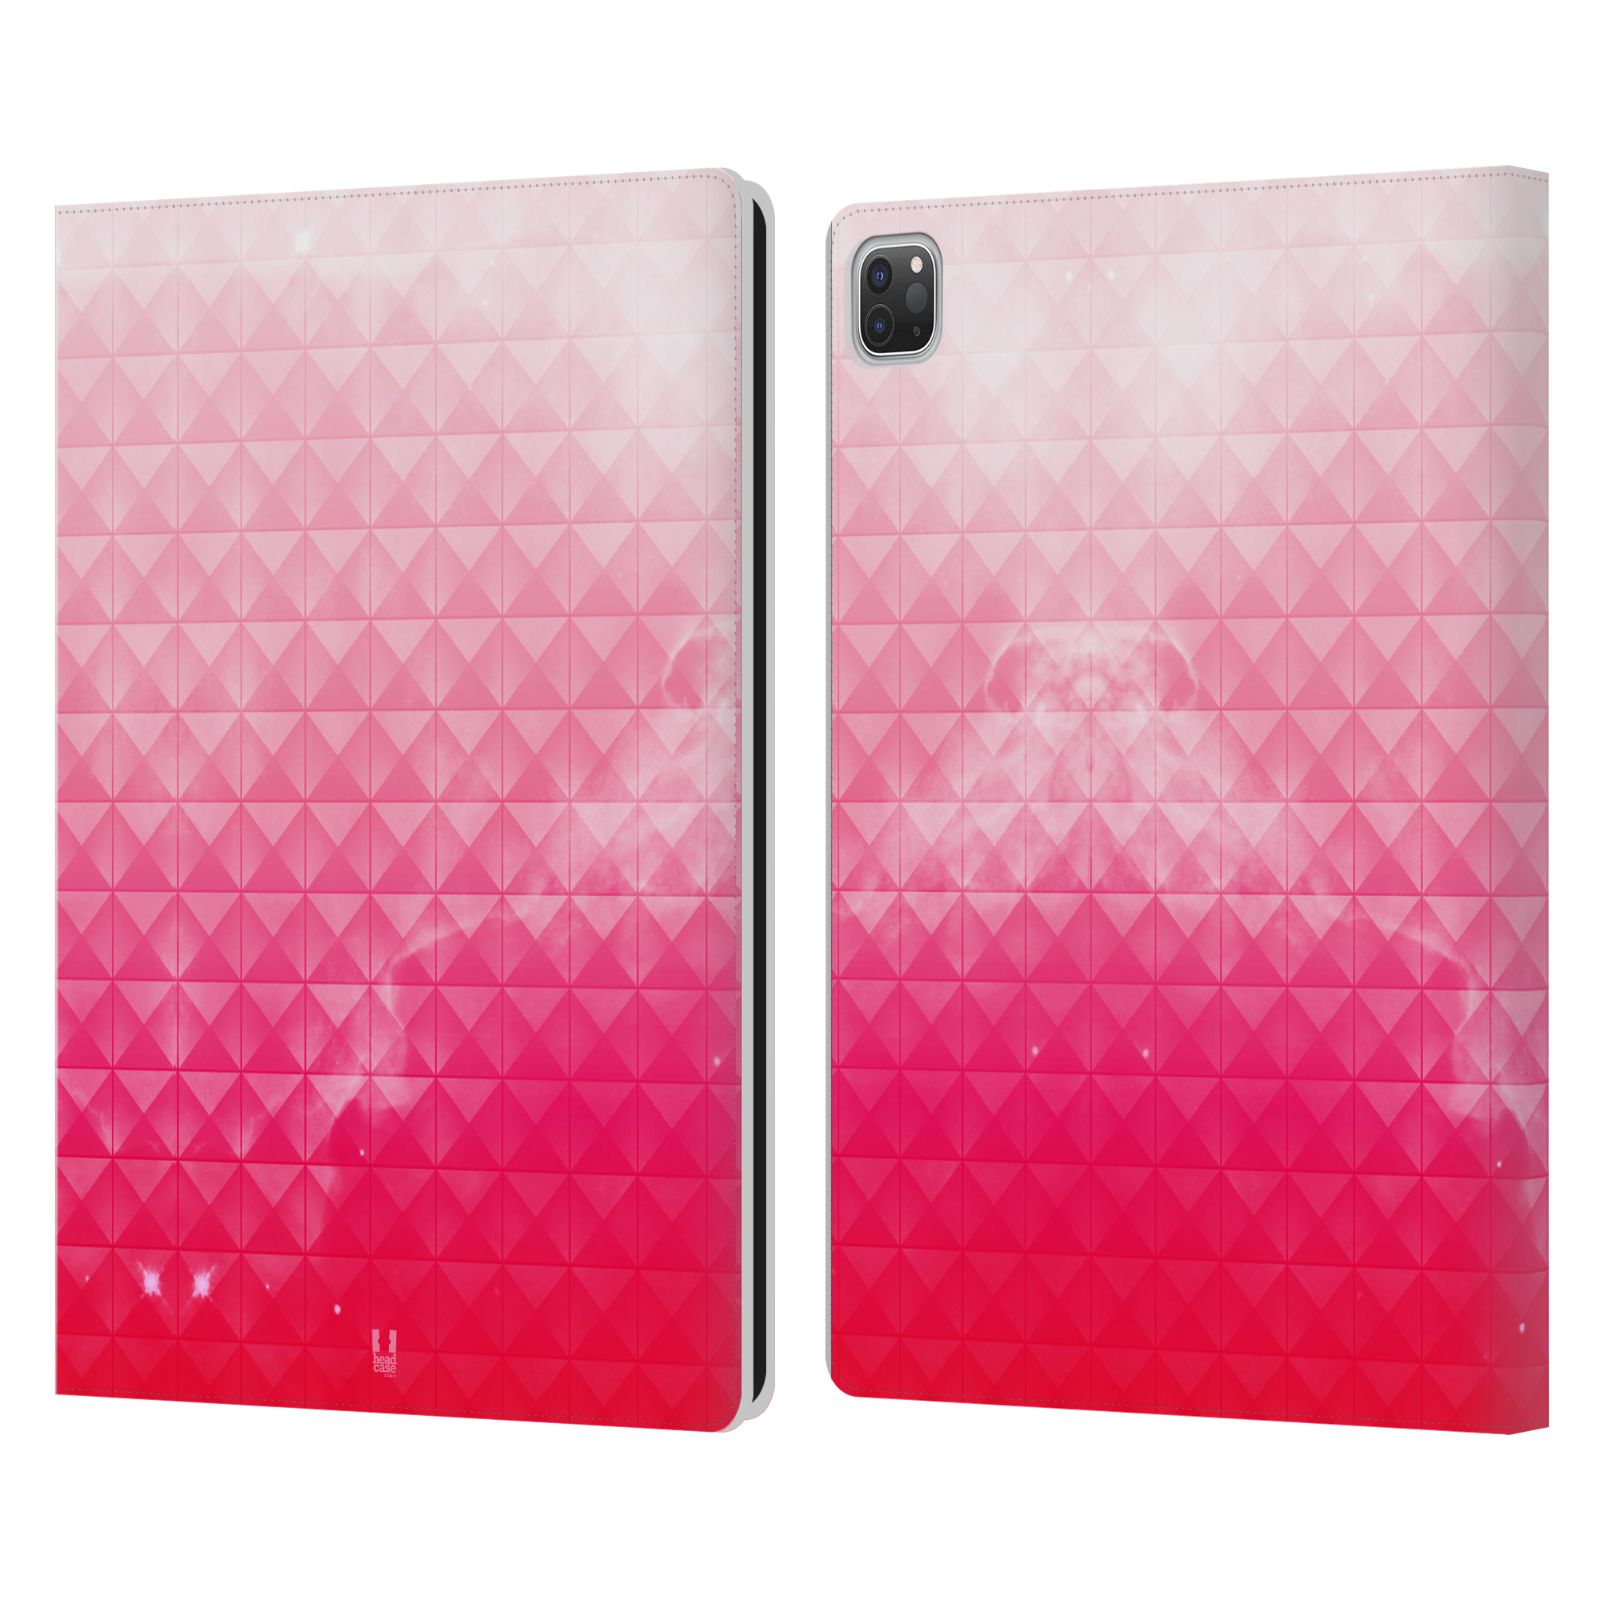 Pouzdro pro tablet Apple Ipad Pro 12.9 - HEAD CASE - barevná vesmírná mlhovina růžová jahoda